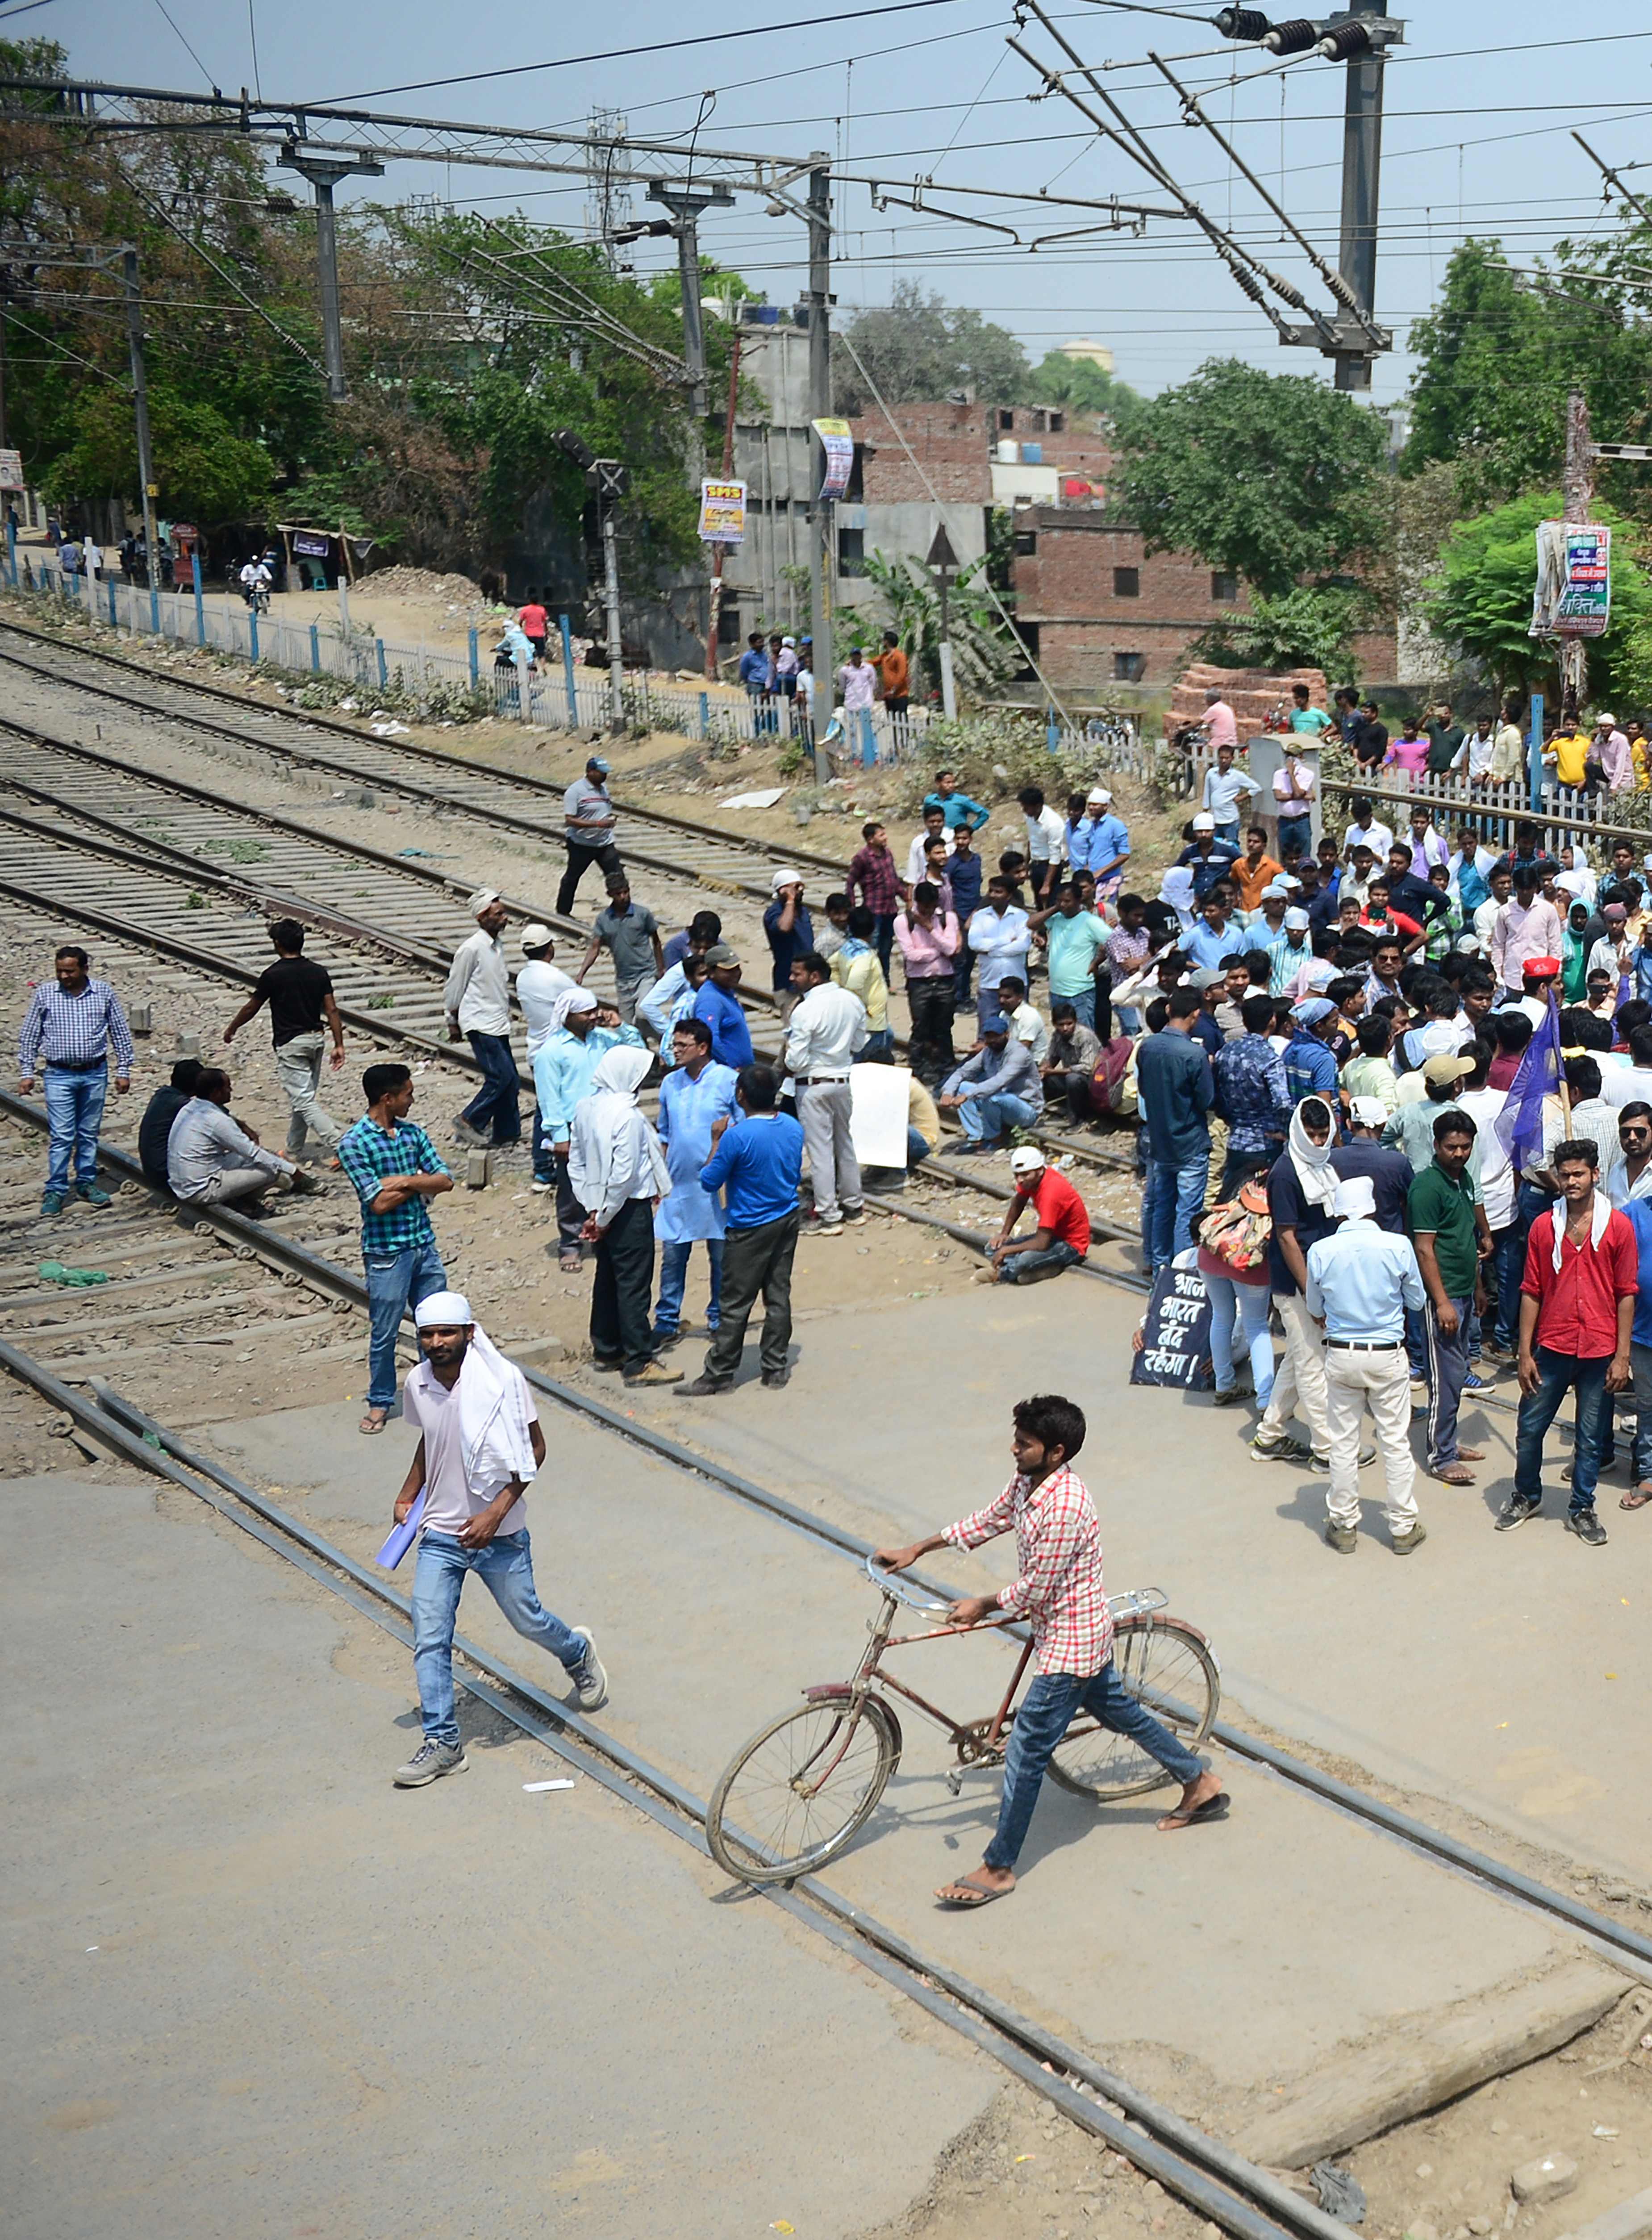 عشرات المتظاهرين يقطعون خطوط السكك الحديدية فى الهند